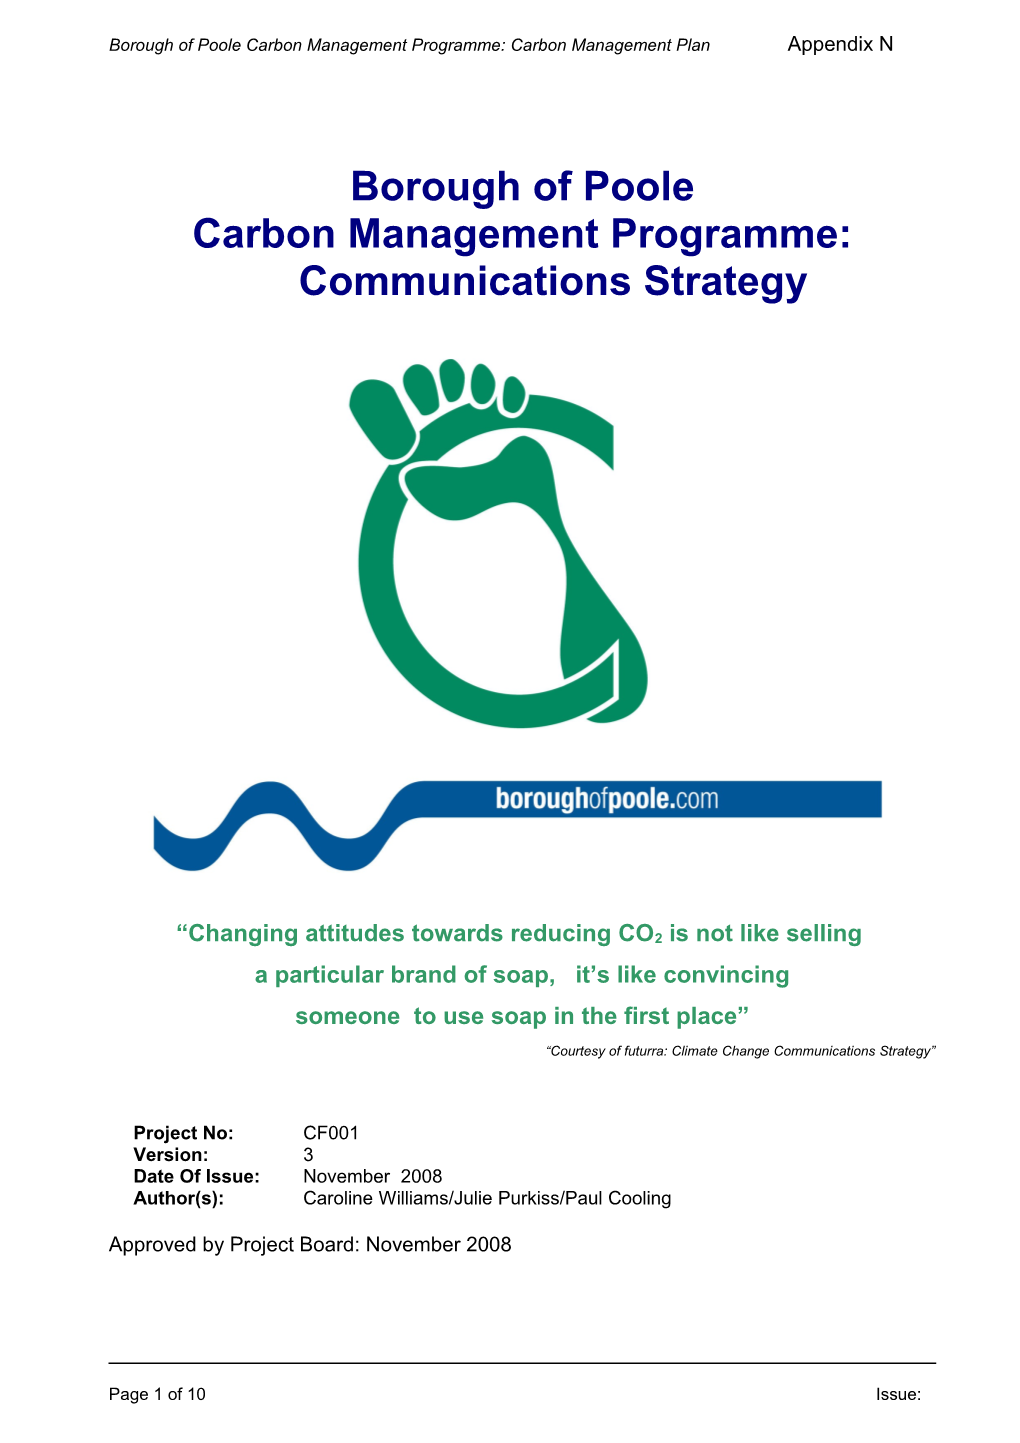 Appendix N to Carbon Management Programme